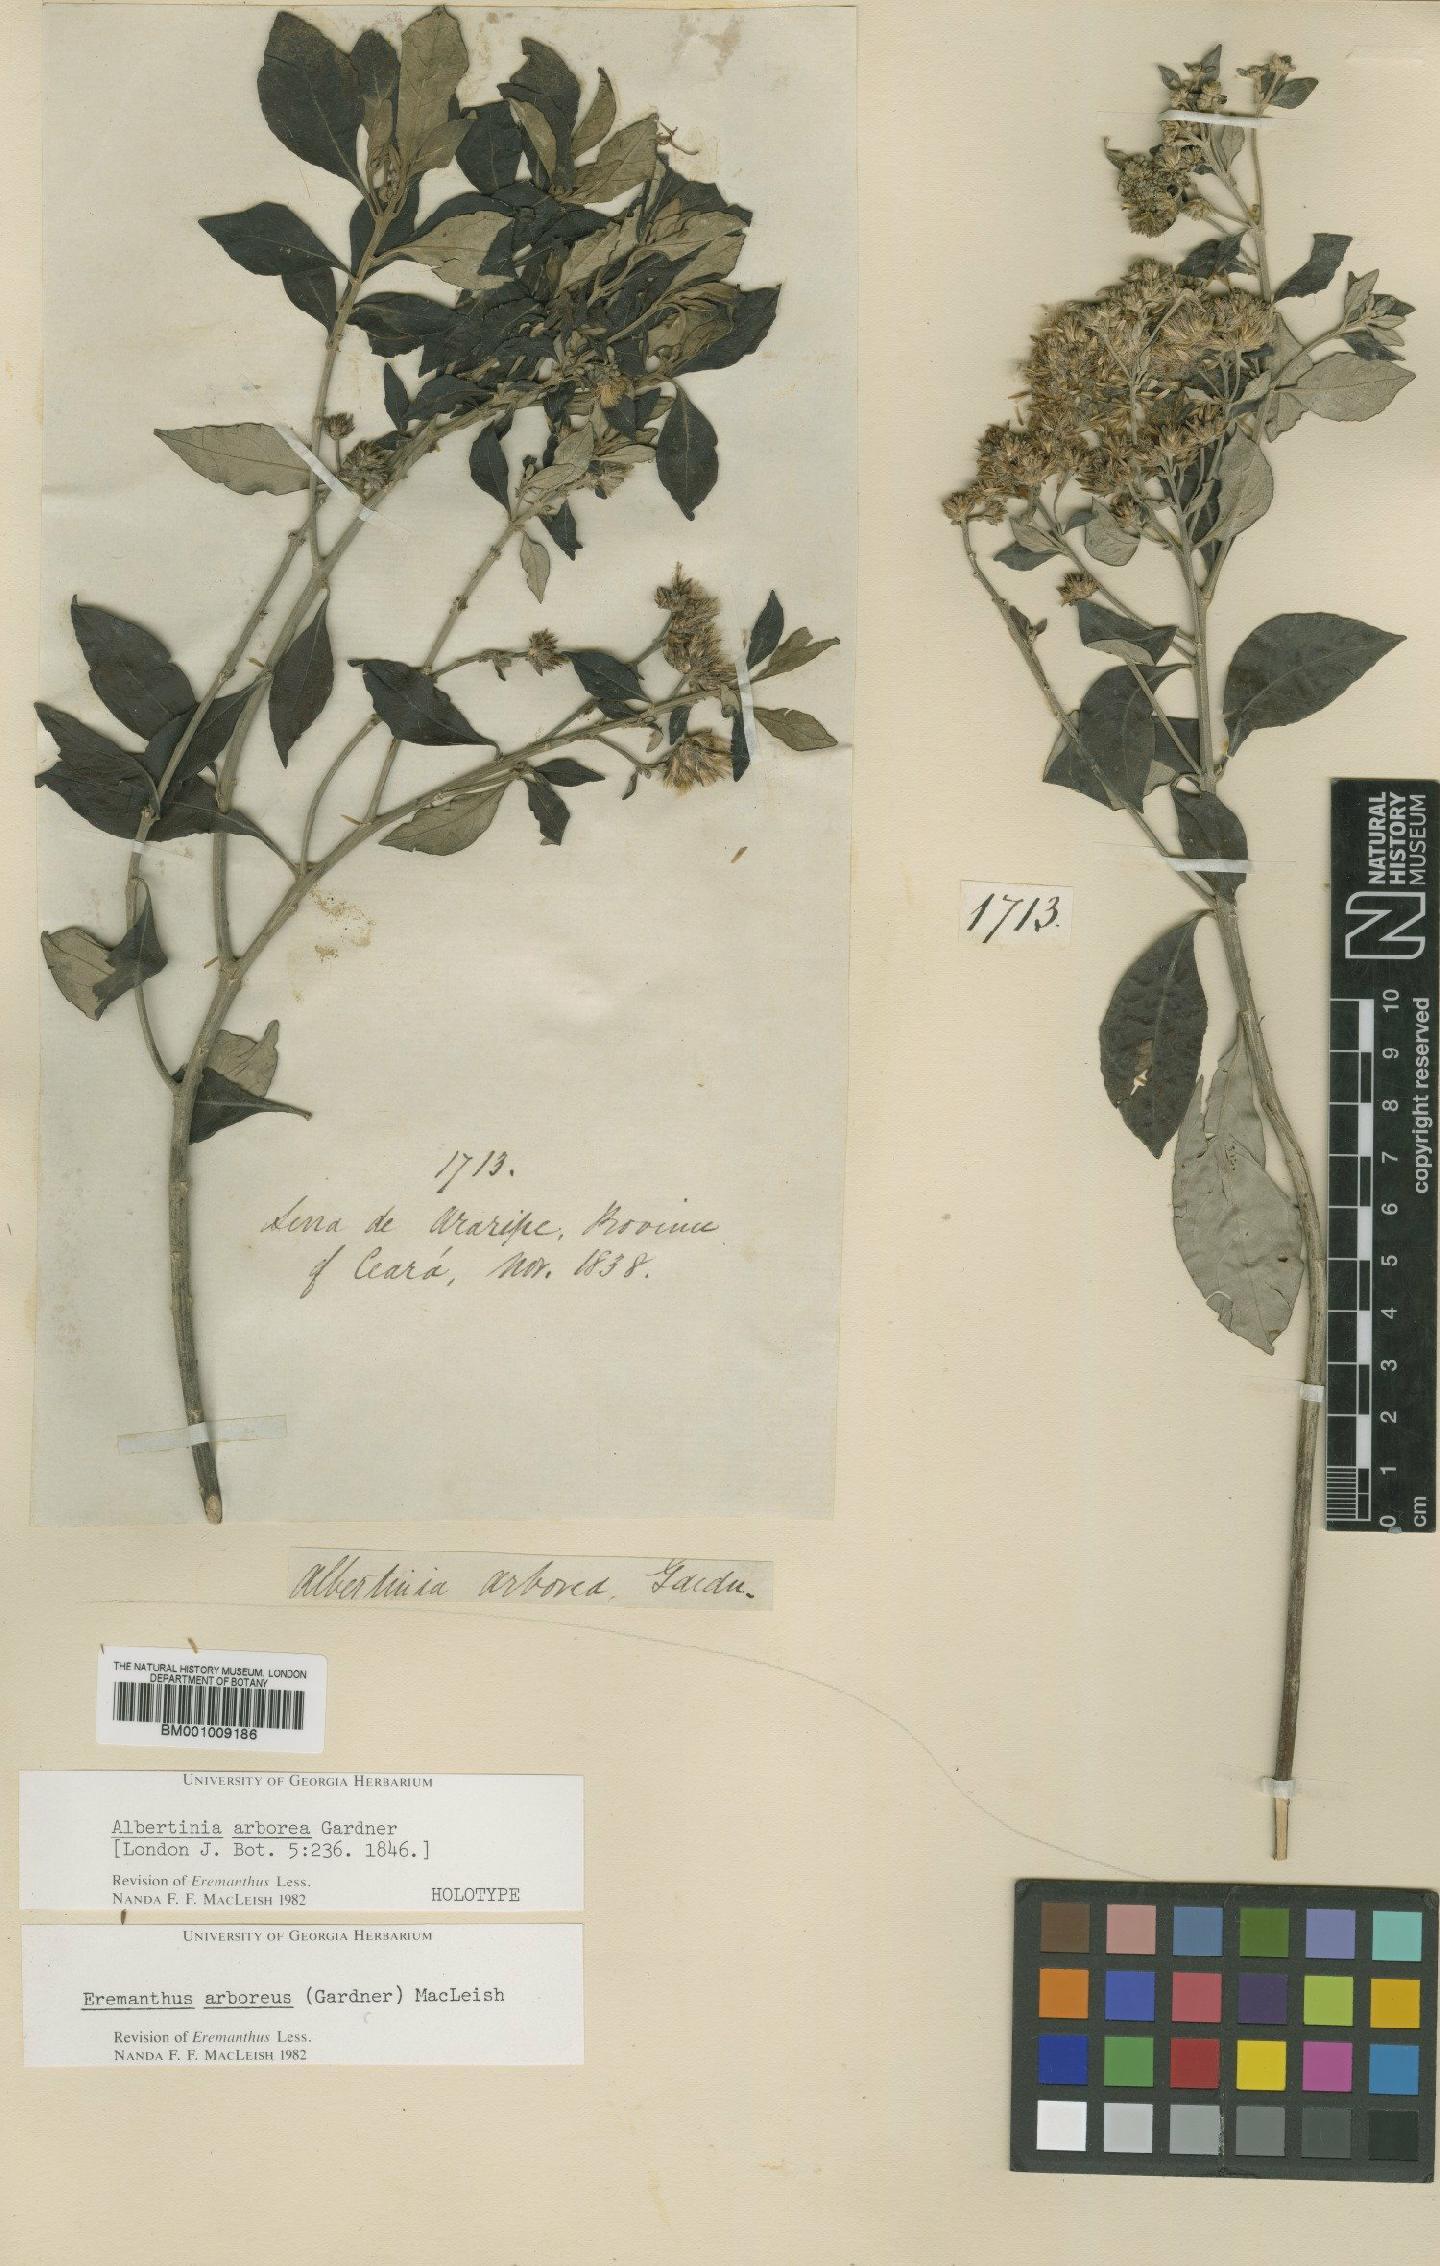 To NHMUK collection (Eremanthus arboreus (Gardner) MacLeish; Holotype; NHMUK:ecatalogue:557153)